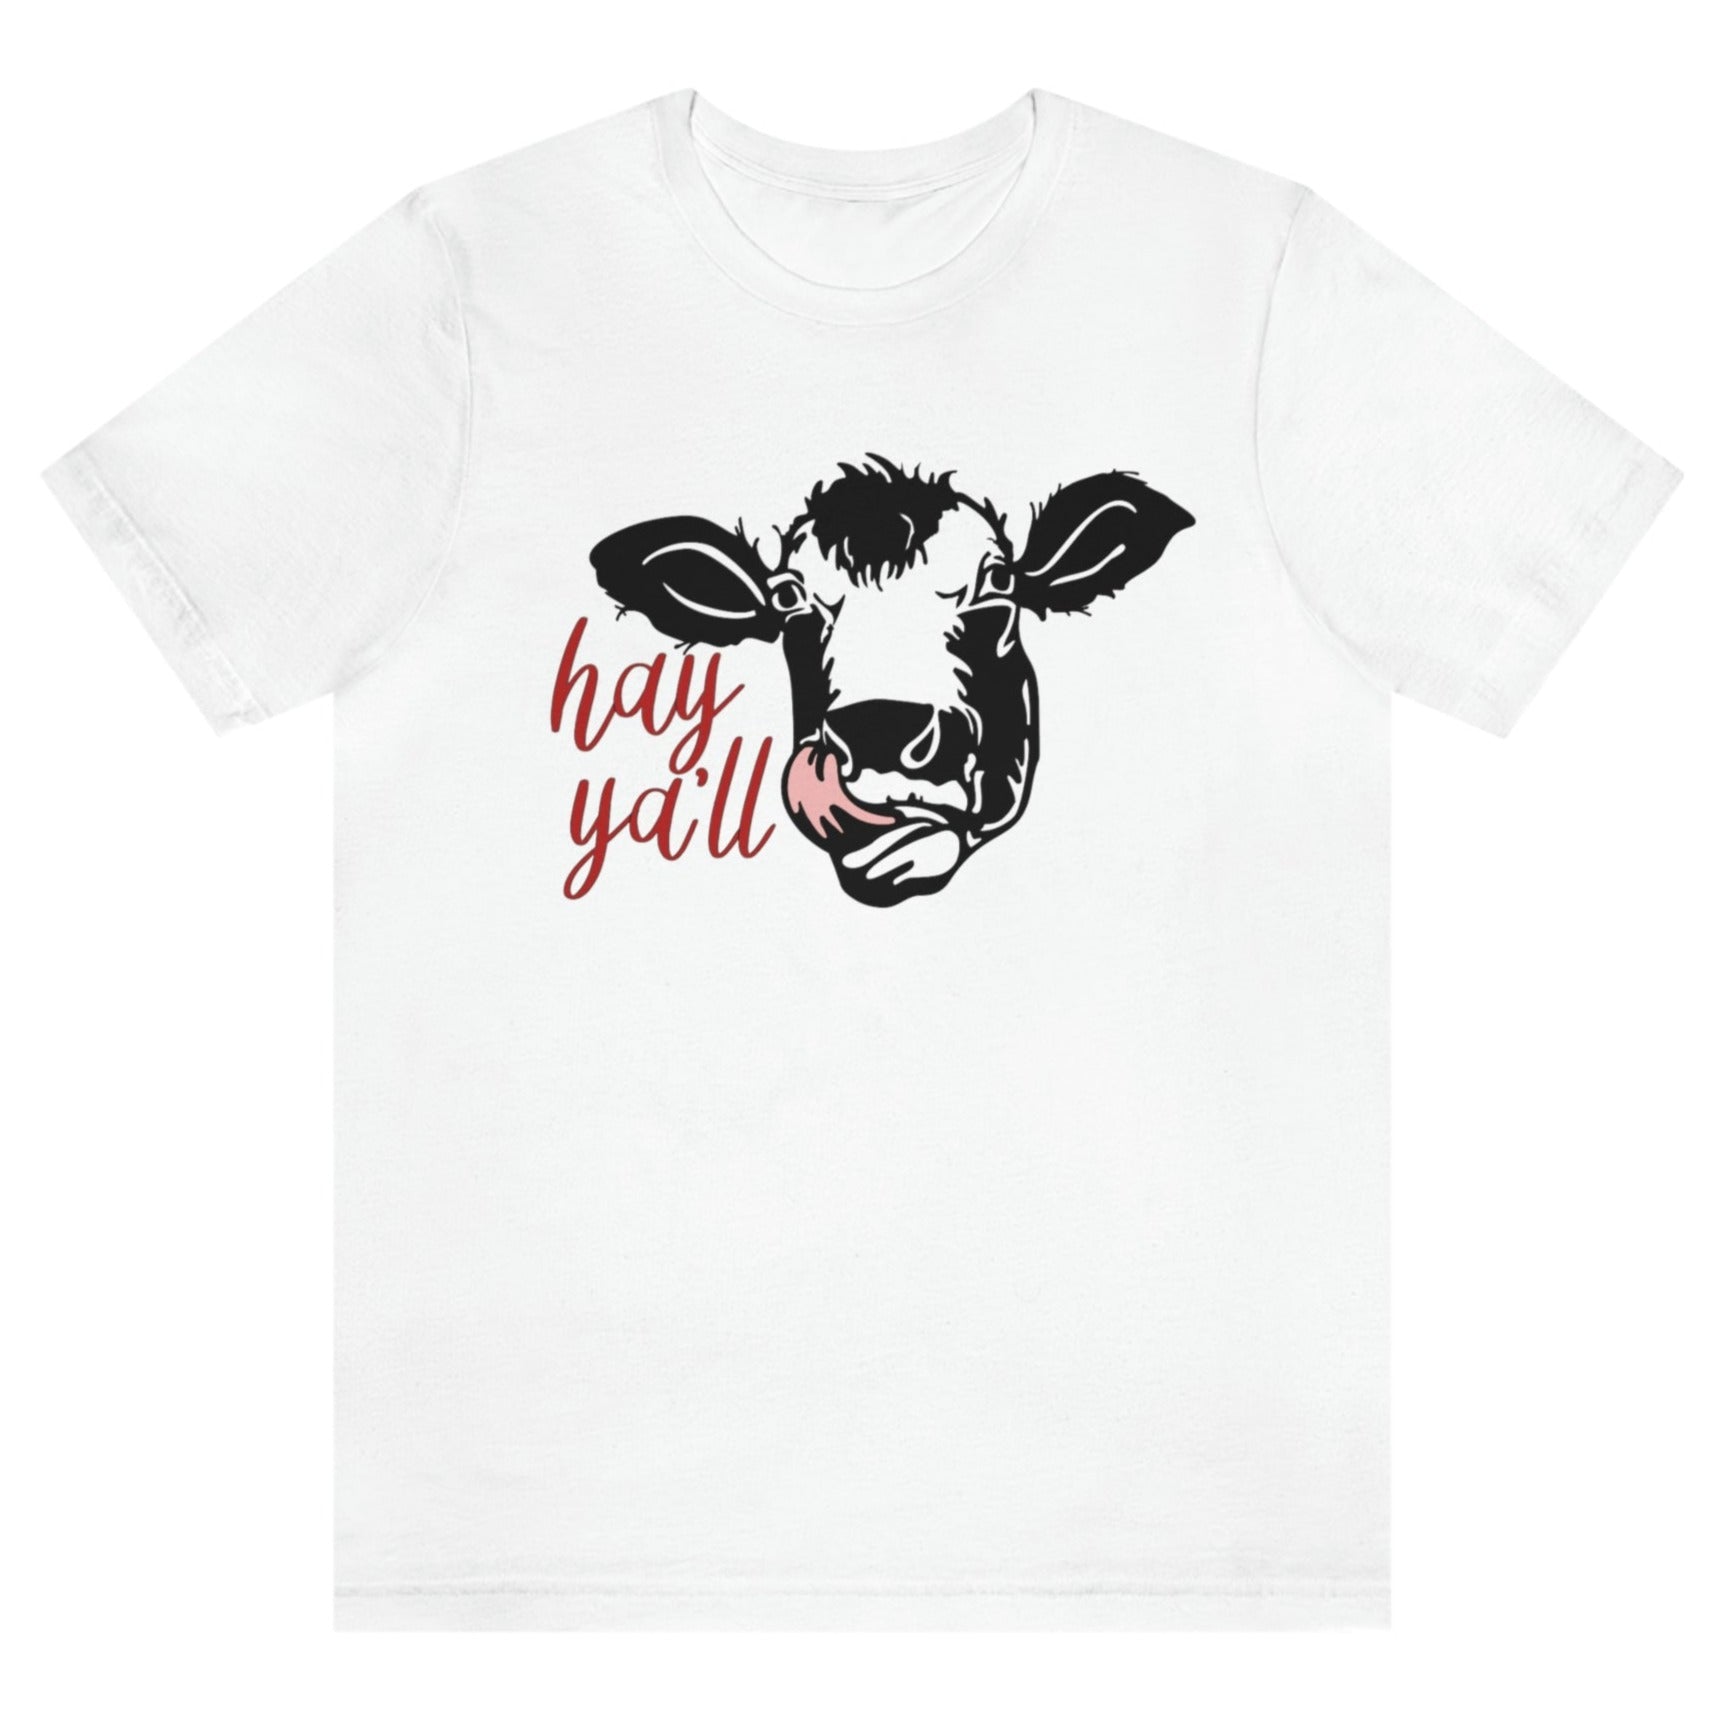 hey-yall-white-t-shirt